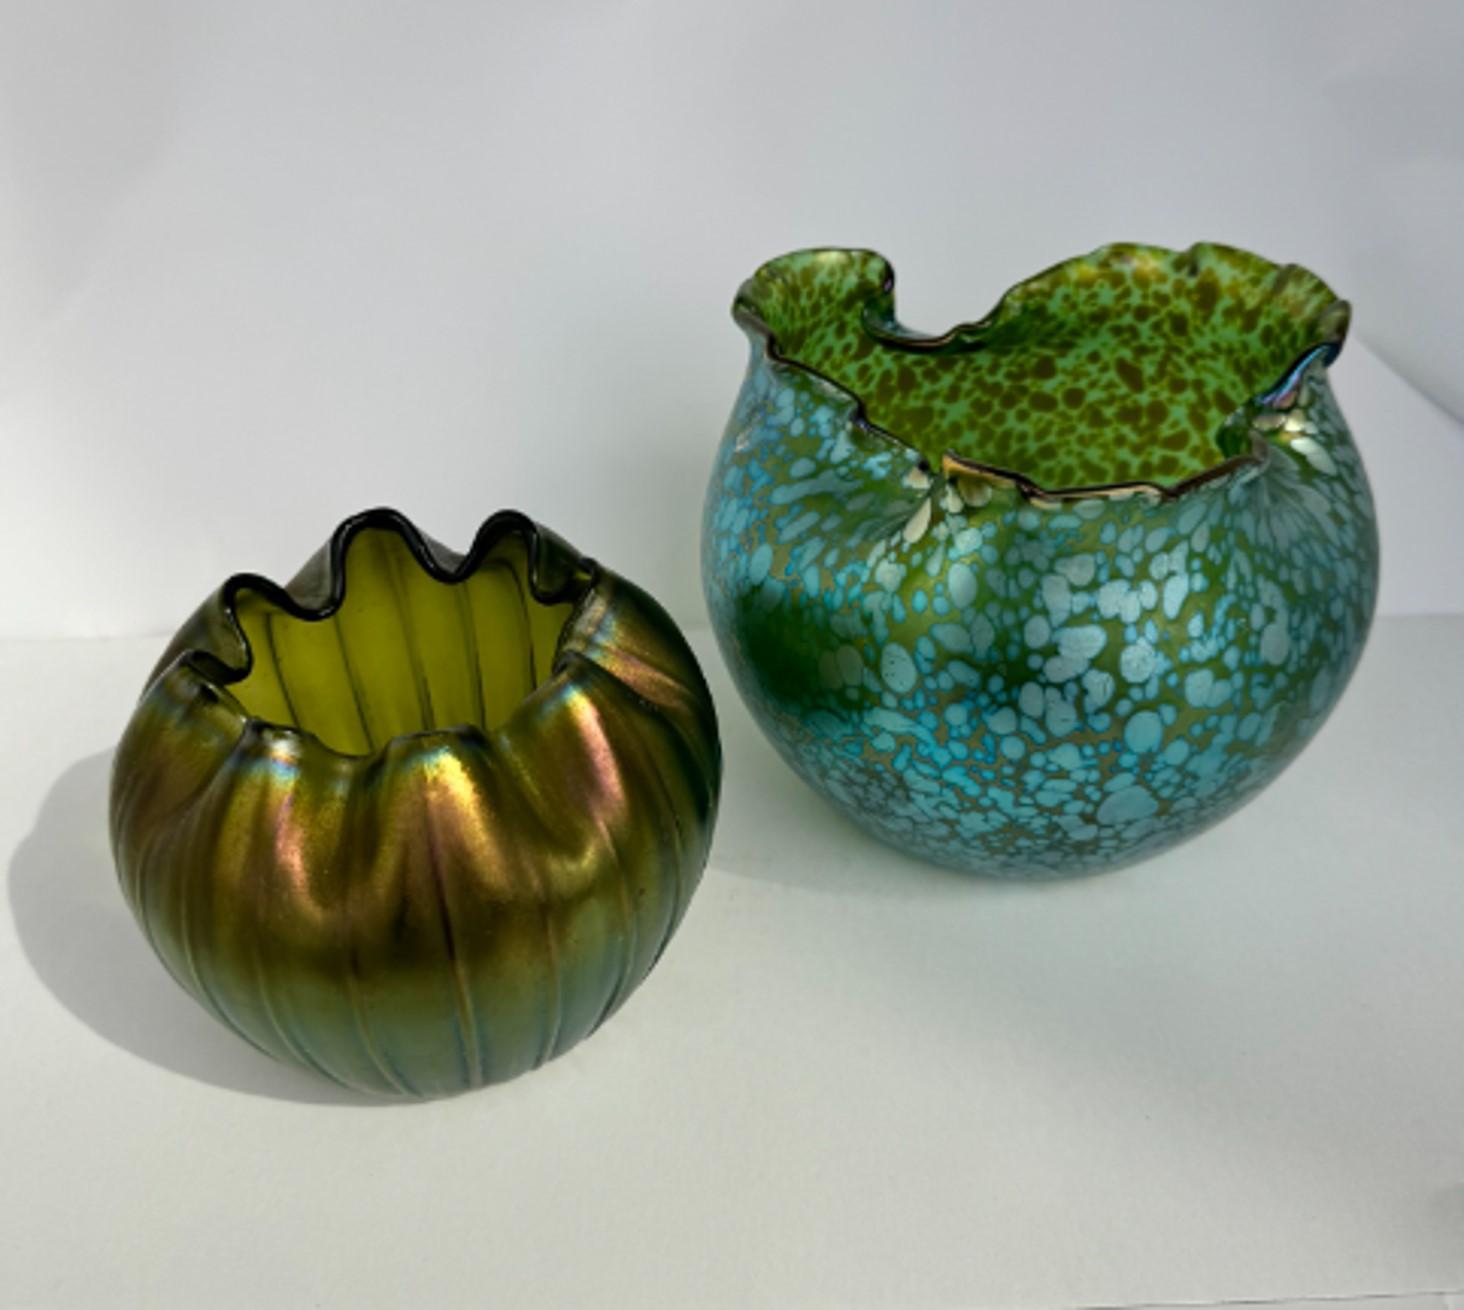 Smaller green vase is 5